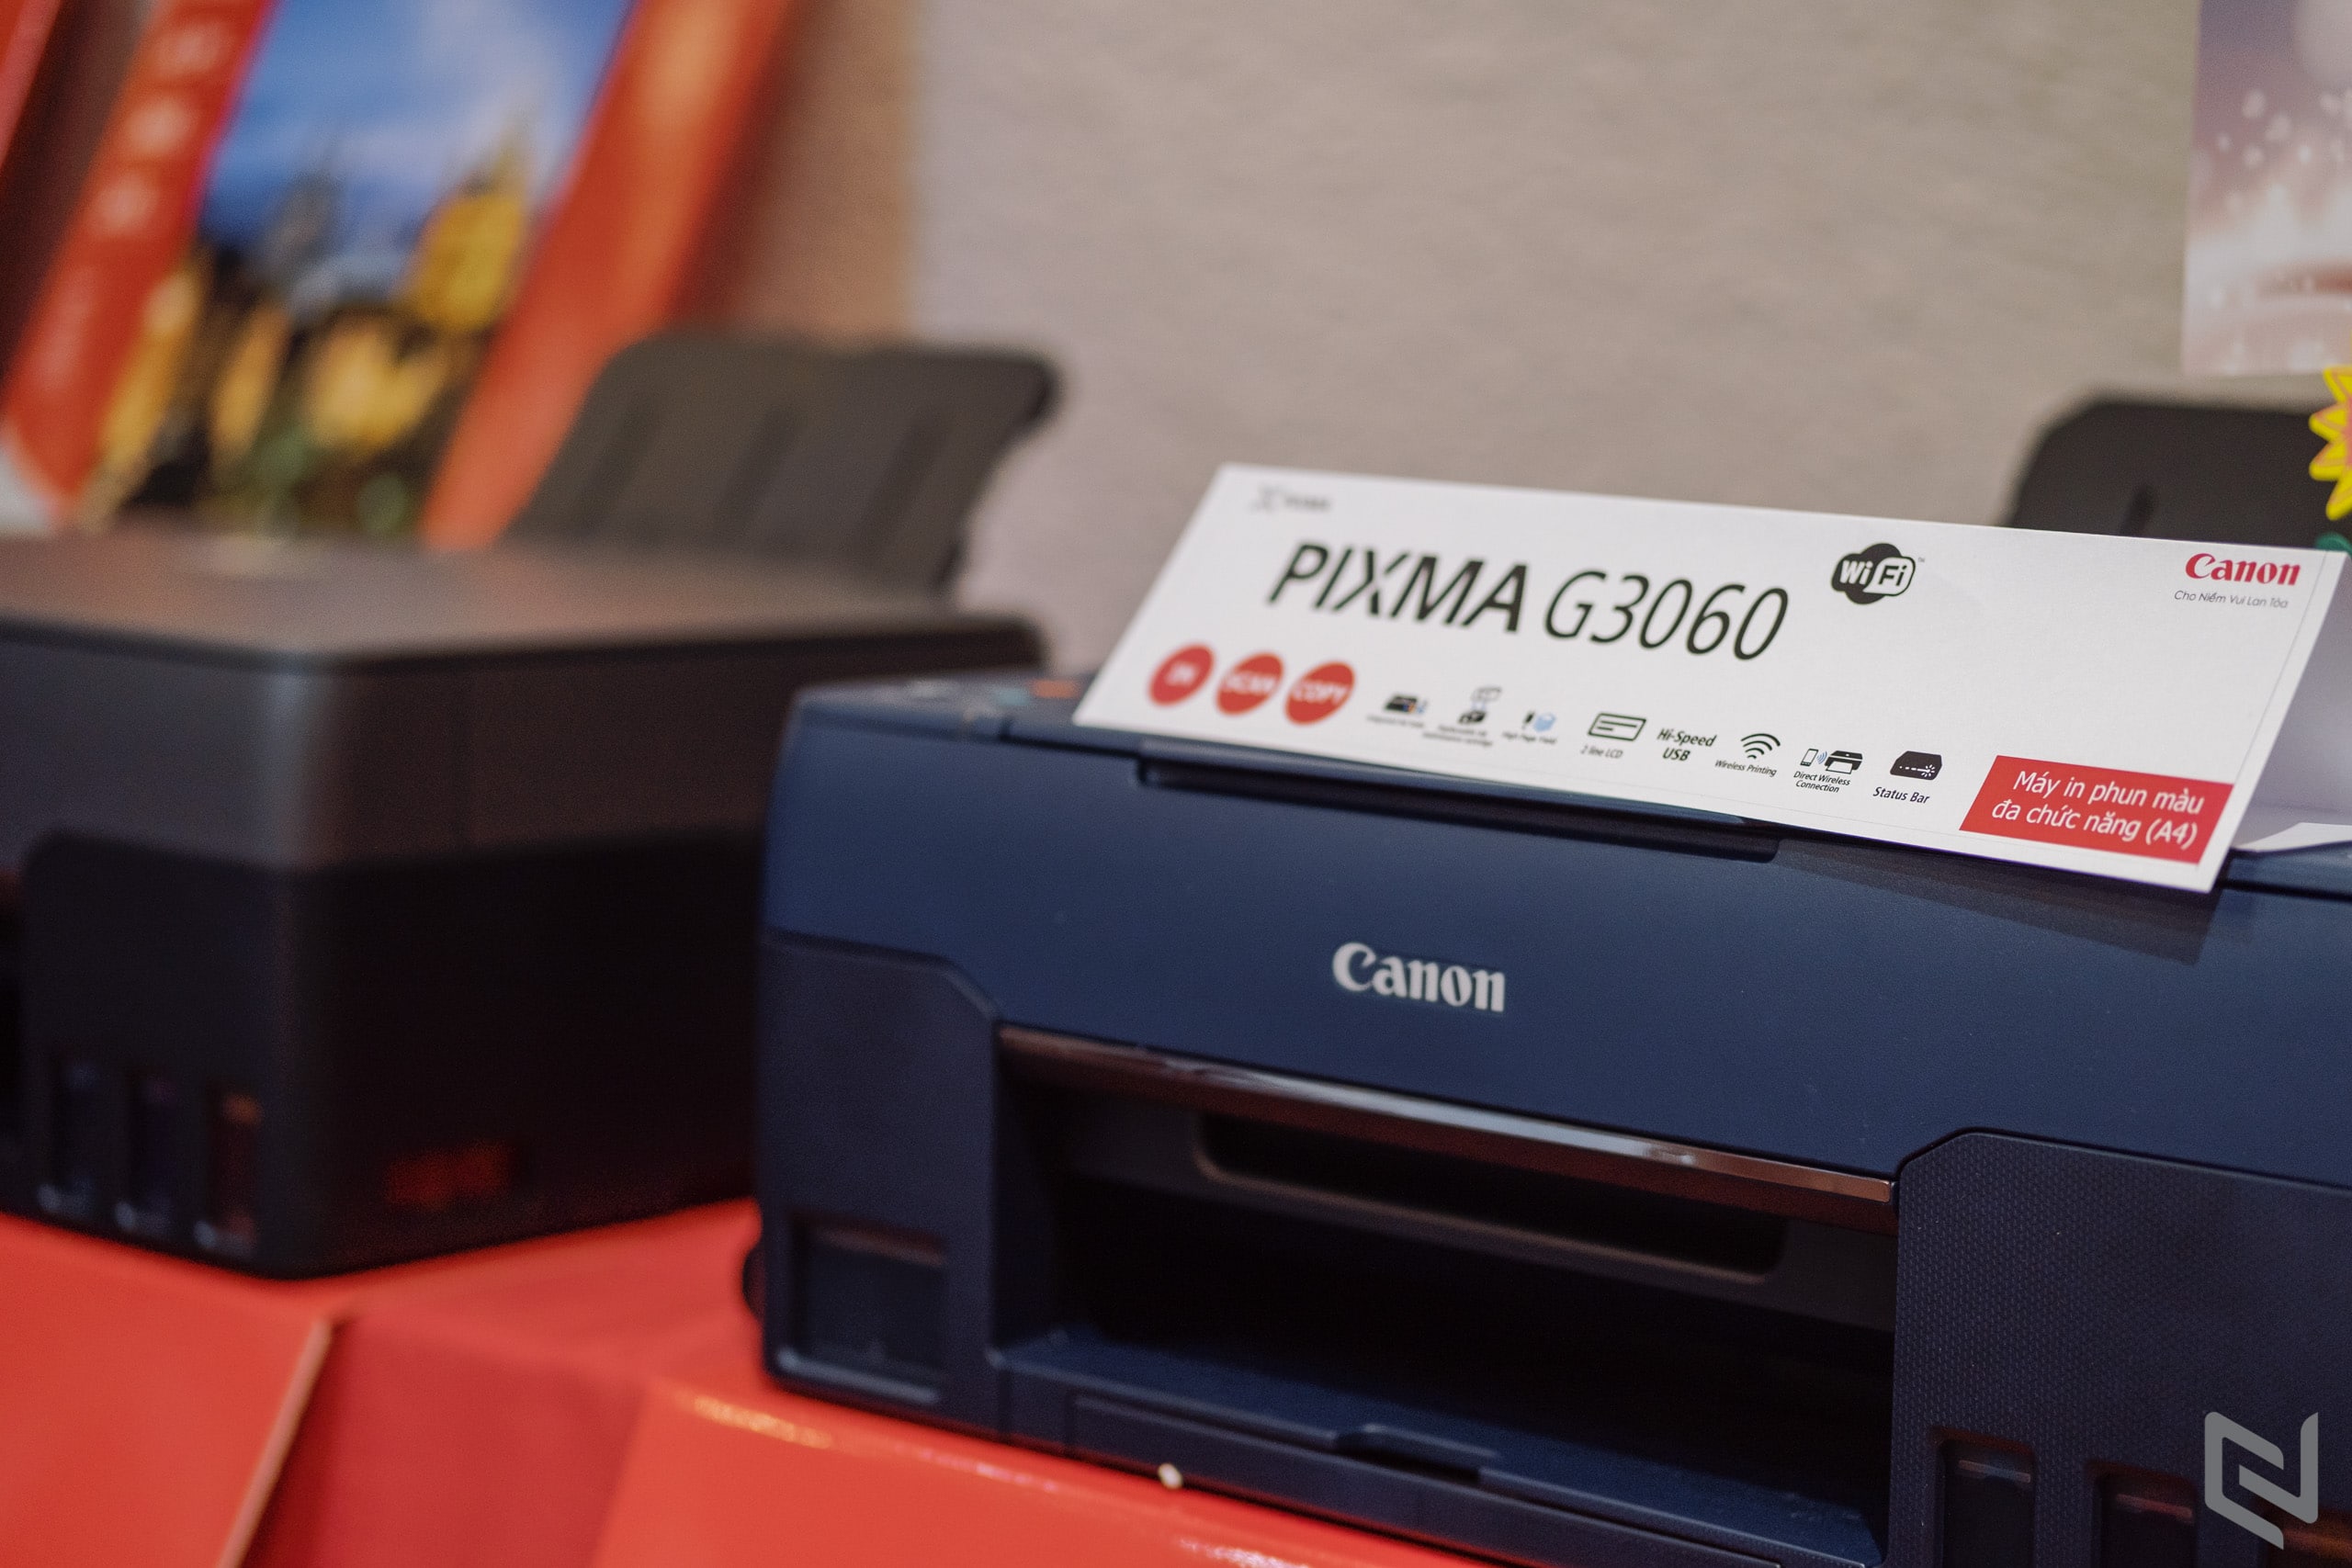 Canon ra mắt loạt máy in mới dòng G series cho văn phòng và máy in chuyên nghiệp khổ A3+